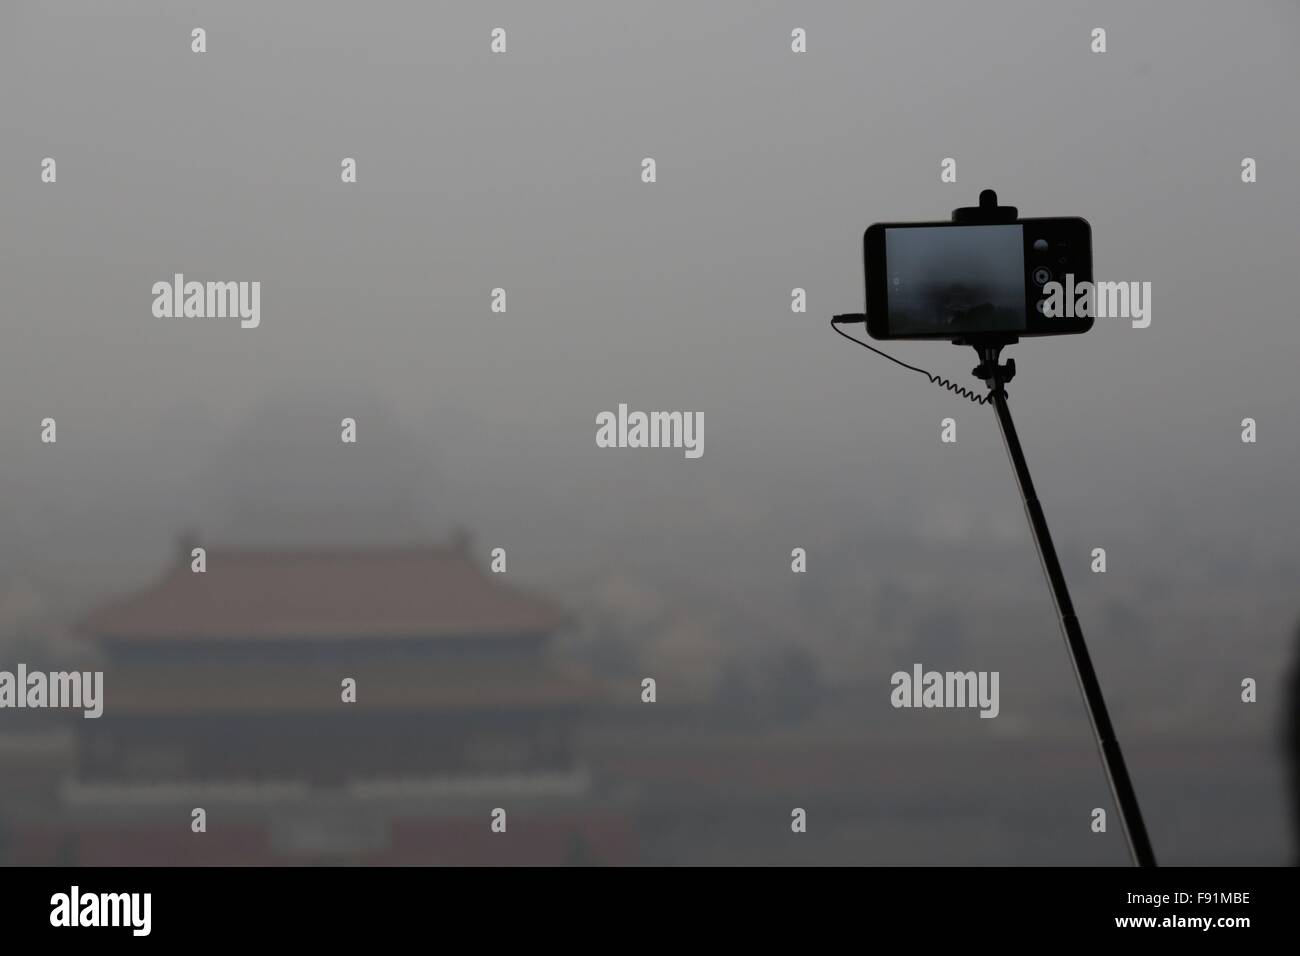 (151213) -- BEIJING, 13 décembre 2015 (Xinhua) -- un touriste prend photo de la Cité interdite au milieu du smog lourds au Parc Jingshan à Beijing, capitale de Chine, le 8 décembre 2015. Dans le cadre d'une alerte rouge, la plus grave, au niveau de la gestion d'urgence de la ville a avisé l'administration centrale des jardins d'enfants, les écoles primaires et secondaires de suspendre les opérations de plein air, classes interdites sur les sites de construction et certaines installations industrielles nécessaires pour limiter ou d'arrêter la production. L'utilisation de la voiture a été limitée au cours de la période d'alerte rouge que les voitures sont autorisés sur les routes en alternance en fonction de la les numéros pairs ou impairs de leur licence plat Banque D'Images